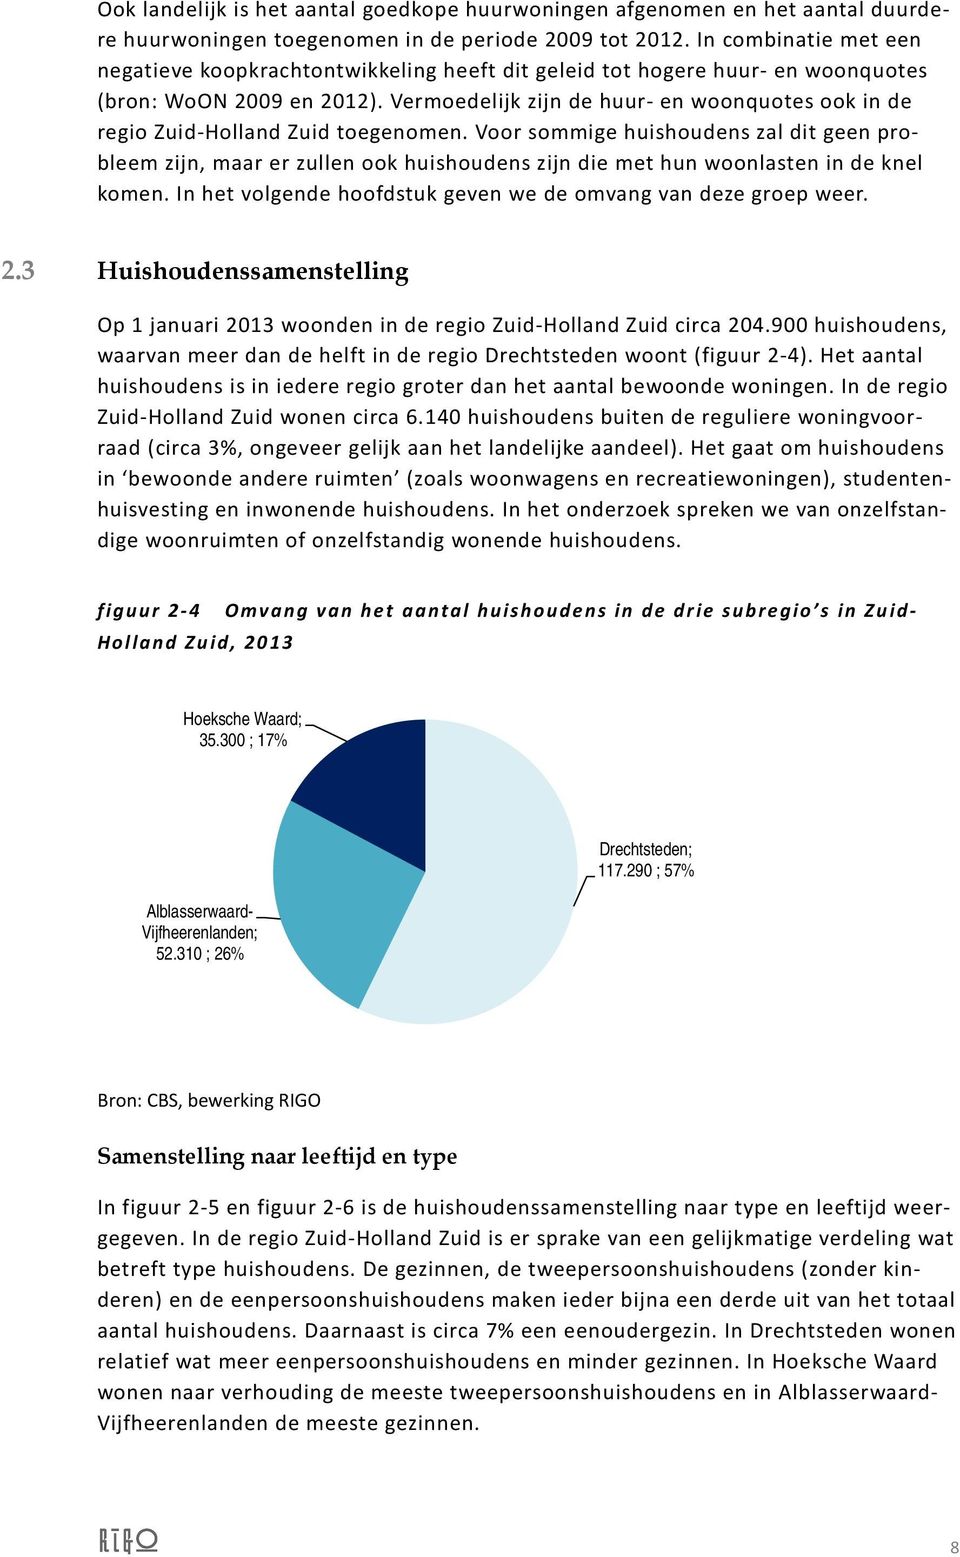 Vermoedelijk zijn de huur- en woonquotes ook in de regio Zuid-Holland Zuid toegenomen.